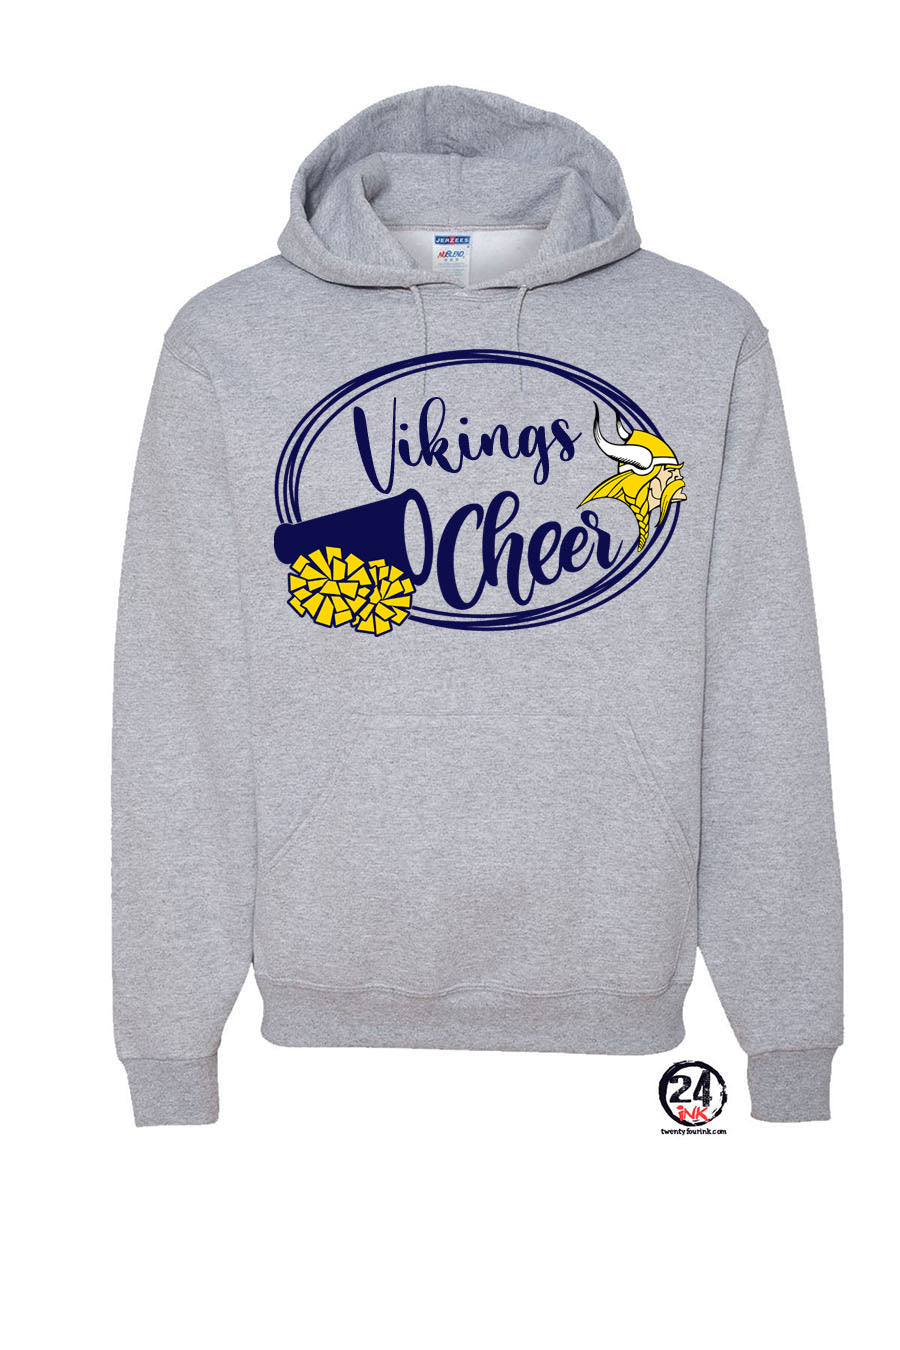 Vikings Cheer design 1 Hooded Sweatshirt